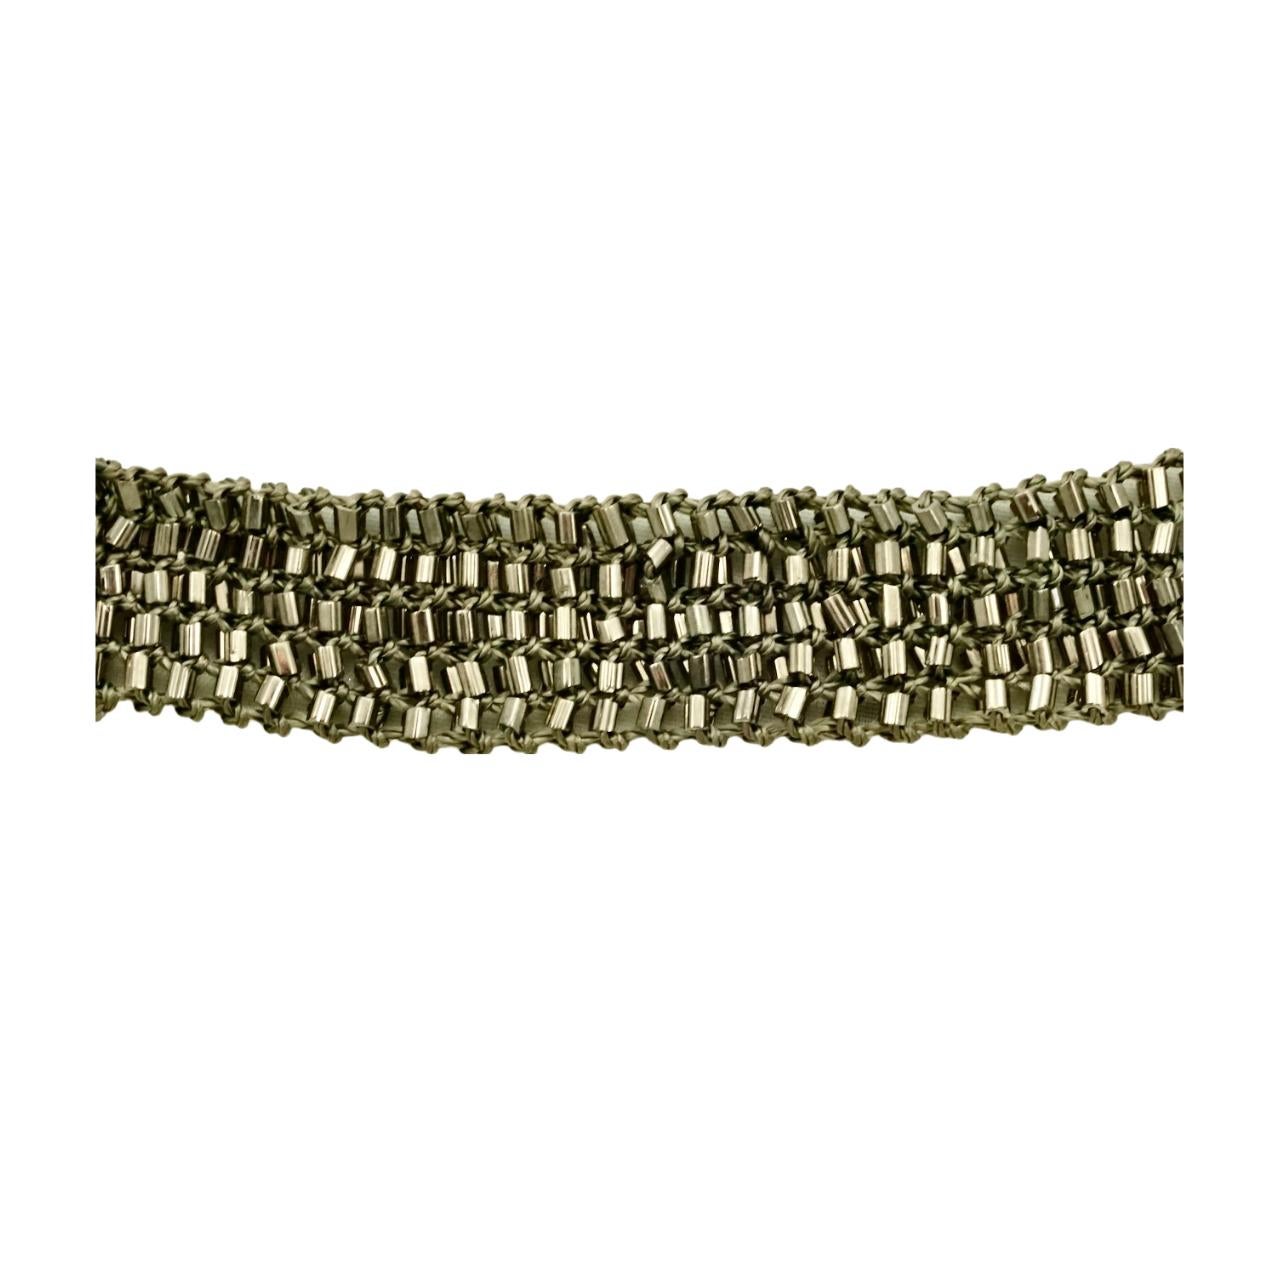 Art-Deco-Lariat-Halskette oder -Gürtel mit silbernen Glasperlen auf grauem Garn. Länge 182 cm / 71,6 Zoll bei 1,8 cm / .7 Zoll Breite. Diese wunderschöne schimmernde Halskette ist in sehr gutem Zustand. 

Dies ist ein fabelhaftes Vintage-Accessoire.